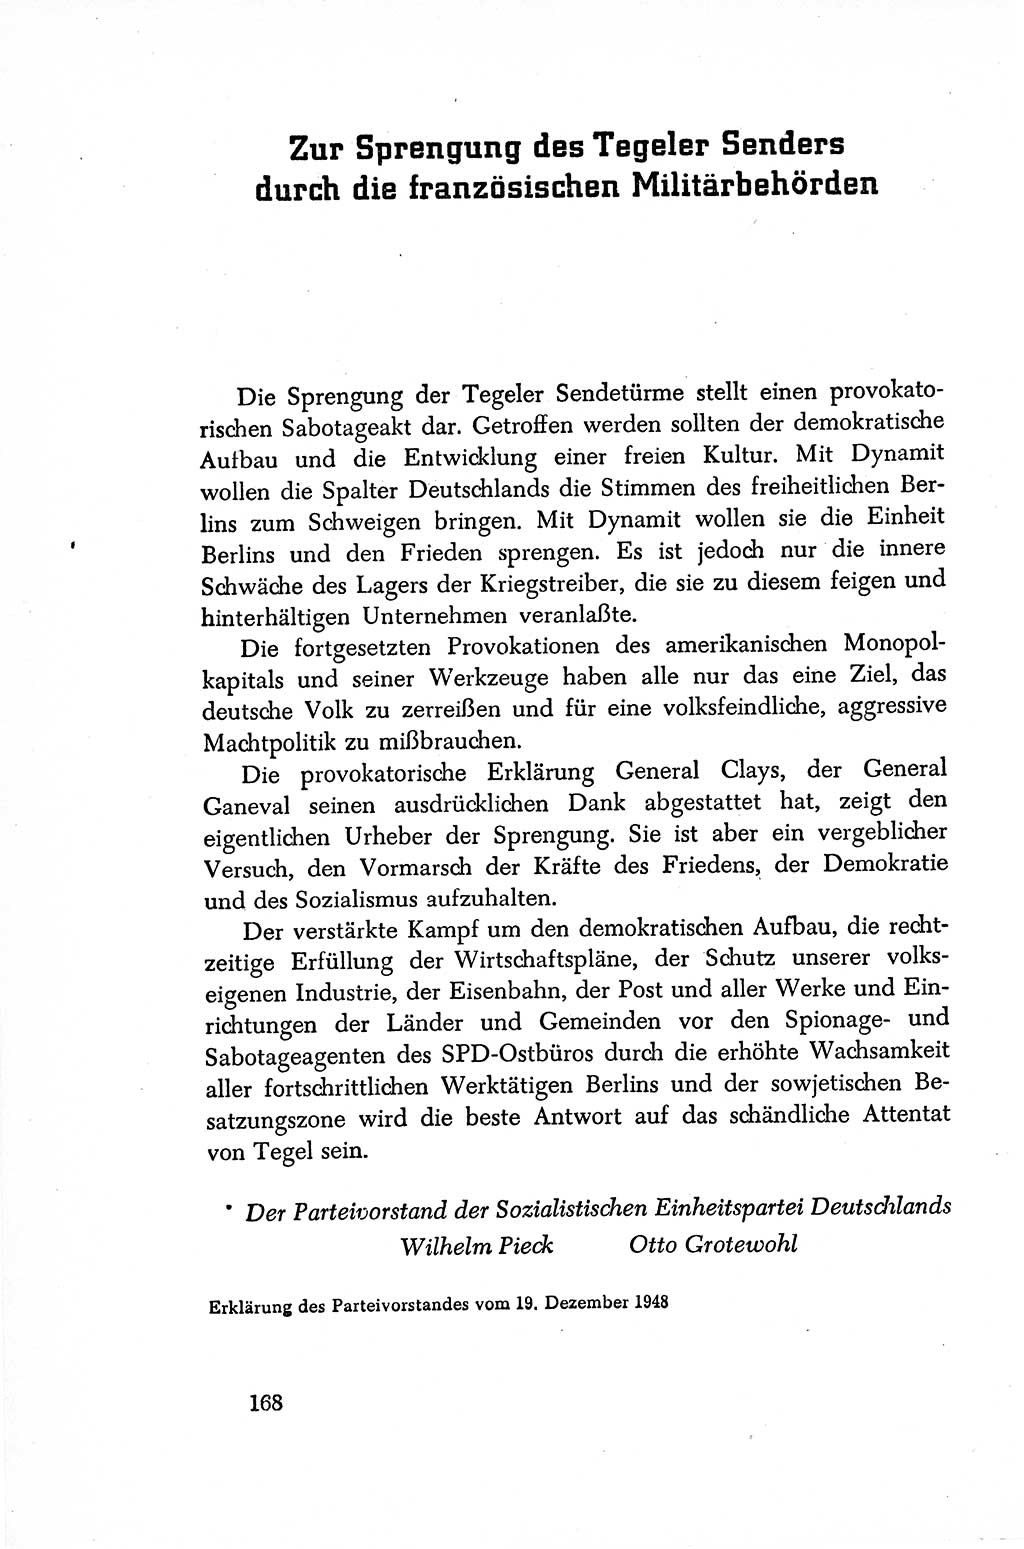 Dokumente der Sozialistischen Einheitspartei Deutschlands (SED) [Sowjetische Besatzungszone (SBZ) Deutschlands/Deutsche Demokratische Republik (DDR)] 1948-1950, Seite 168 (Dok. SED SBZ Dtl. DDR 1948-1950, S. 168)